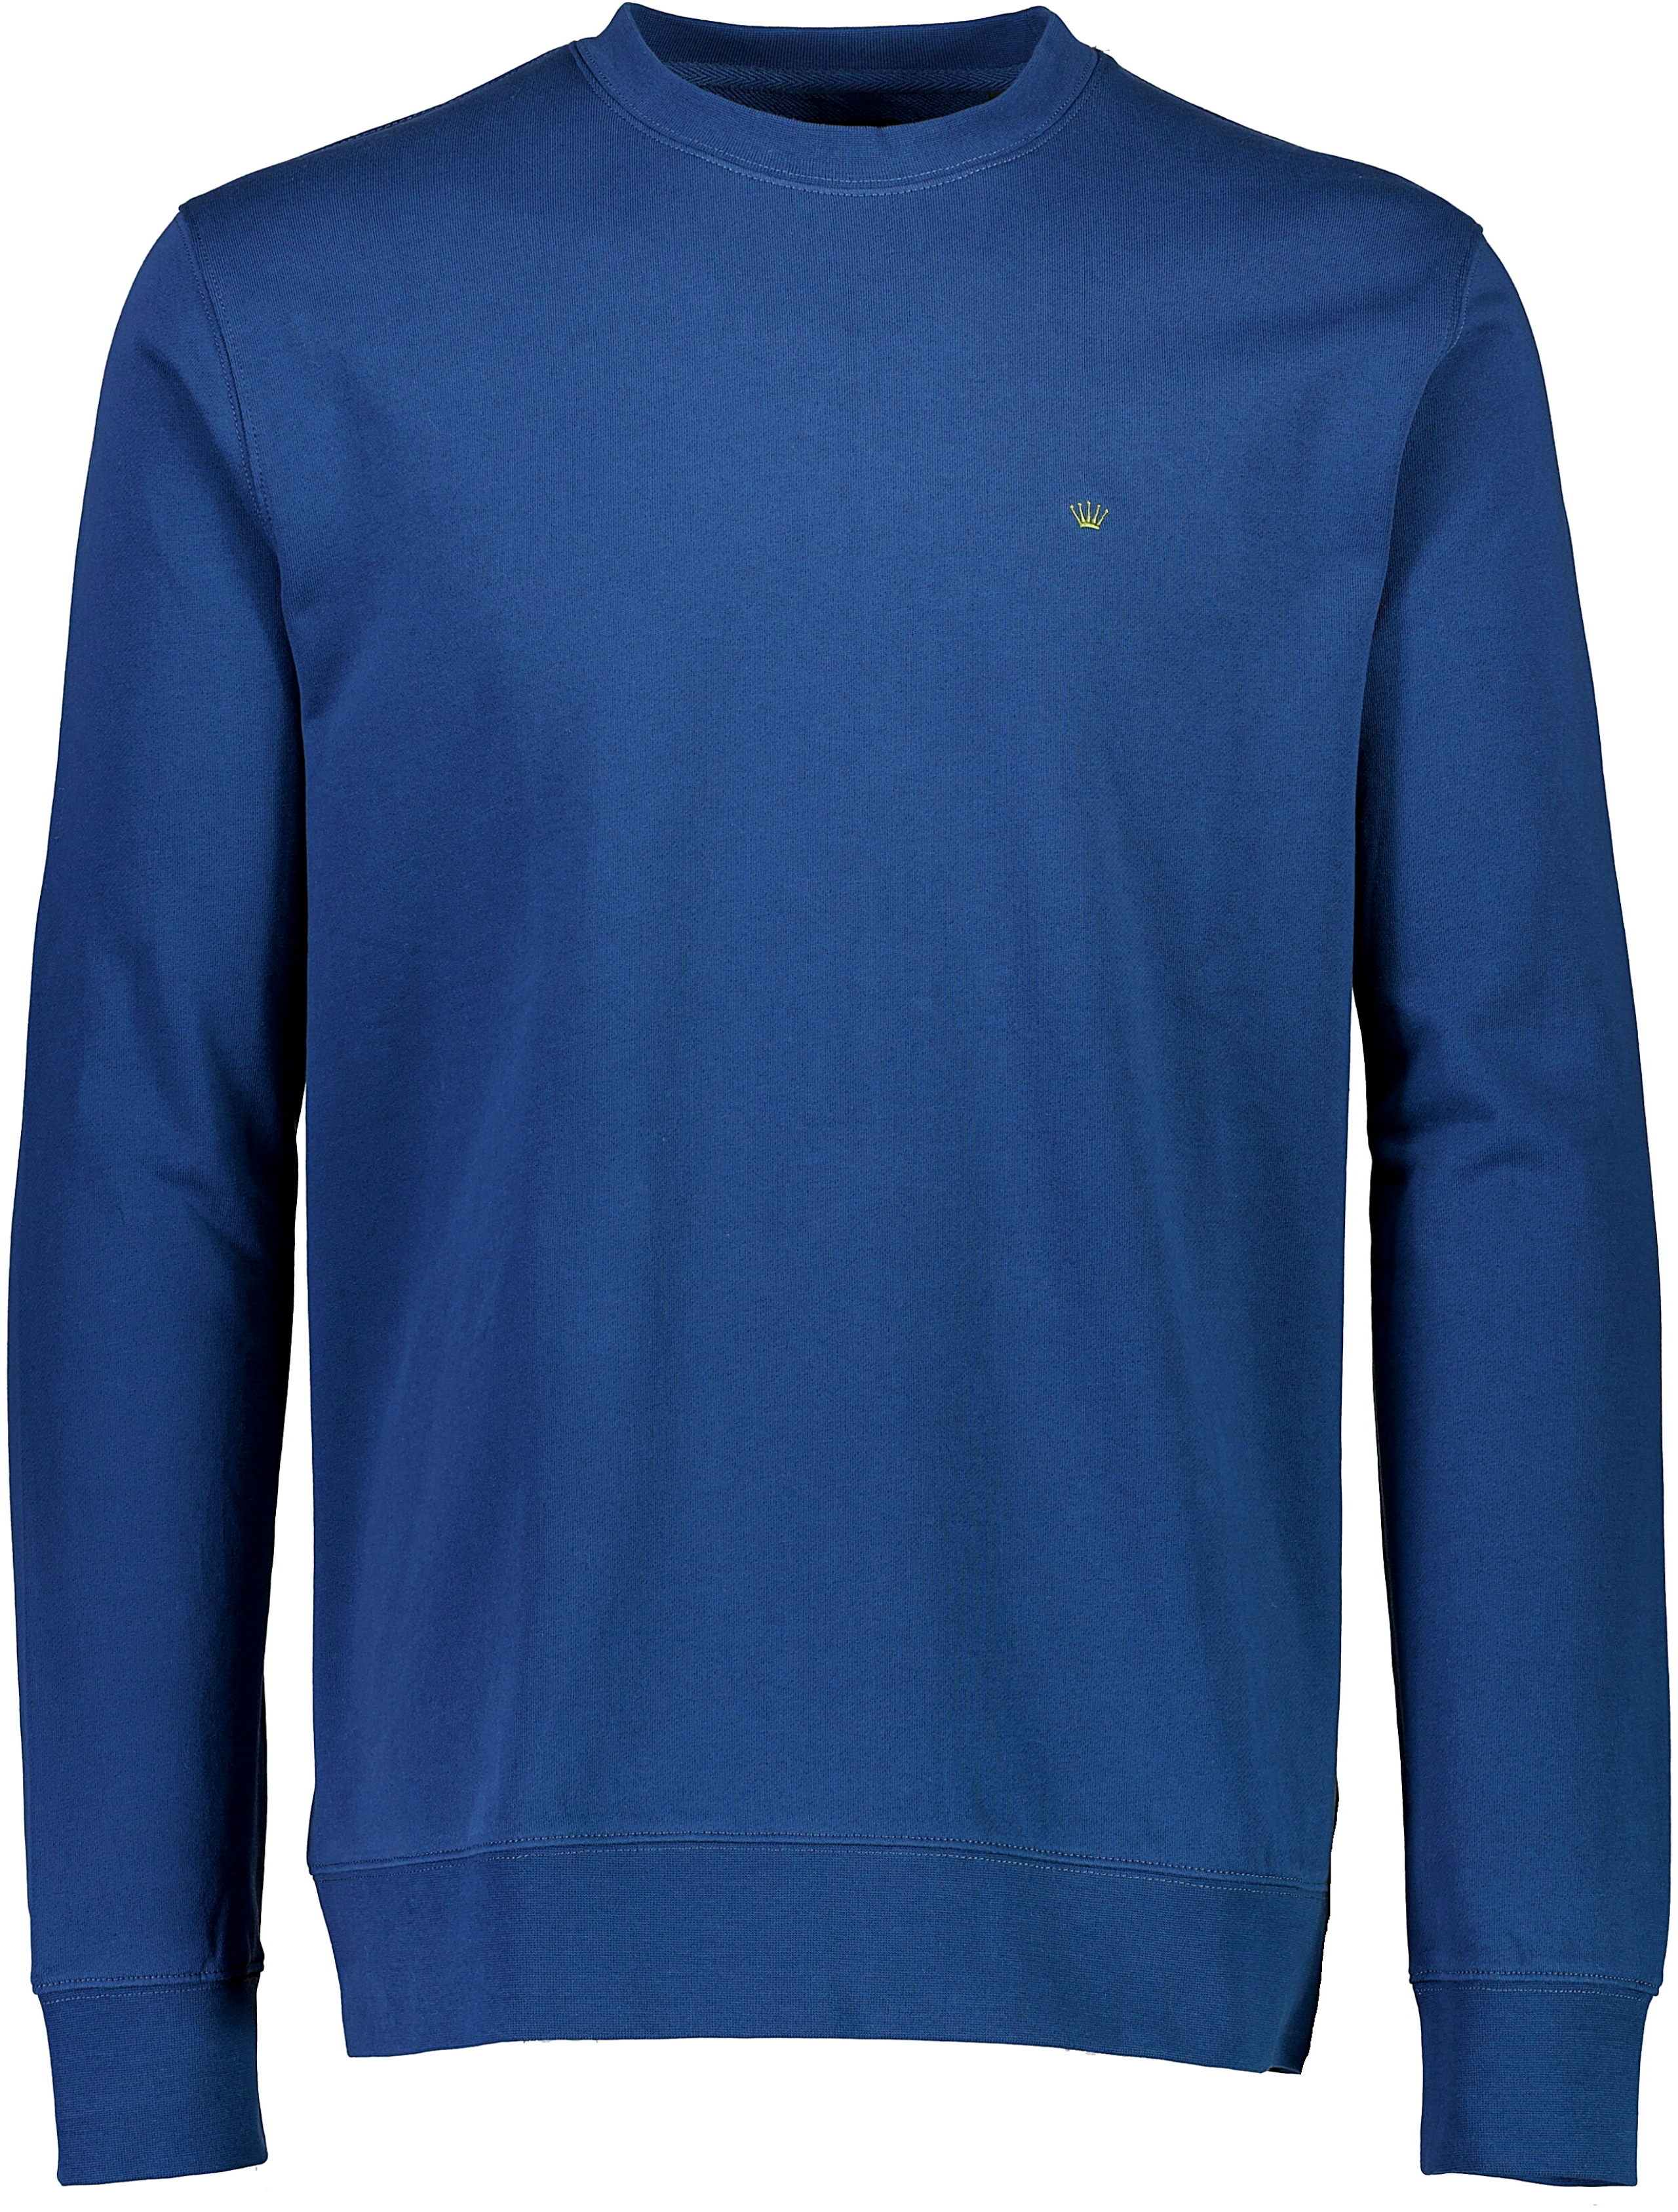 Junk de Luxe Sweatshirt blå / mid navy